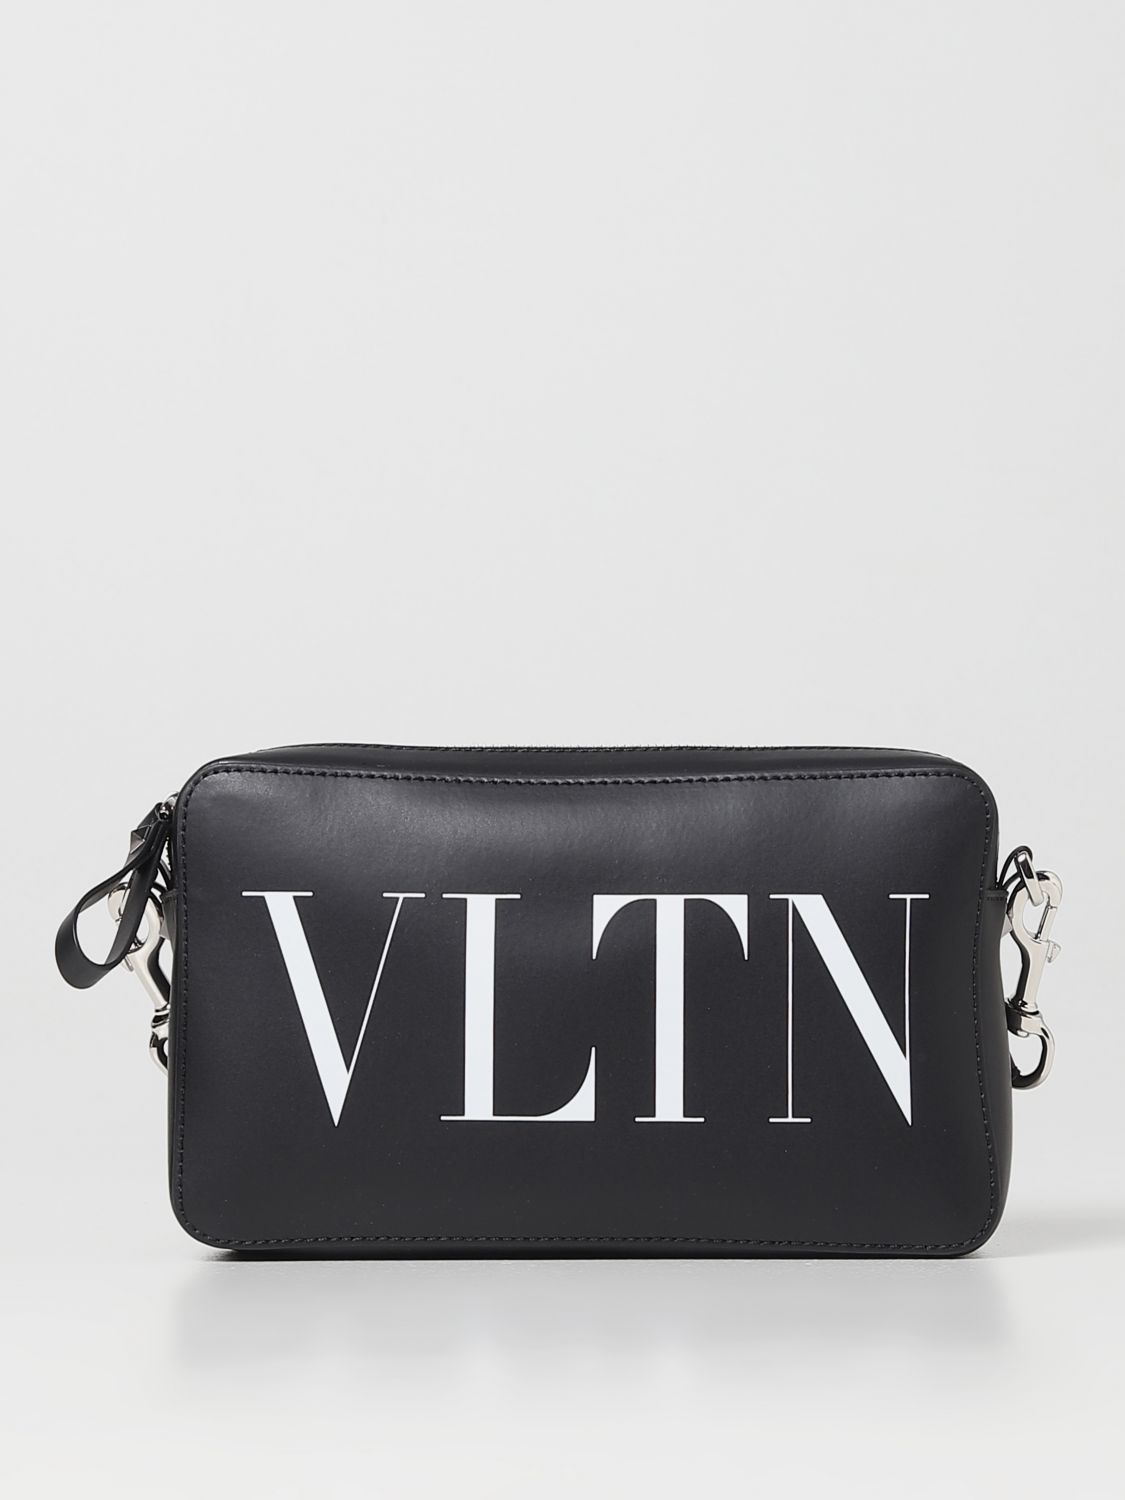 VALENTINO GARAVANI: VLTN leather bag - Black  Valentino Garavani shoulder  bag 2Y2B0704WJW online at